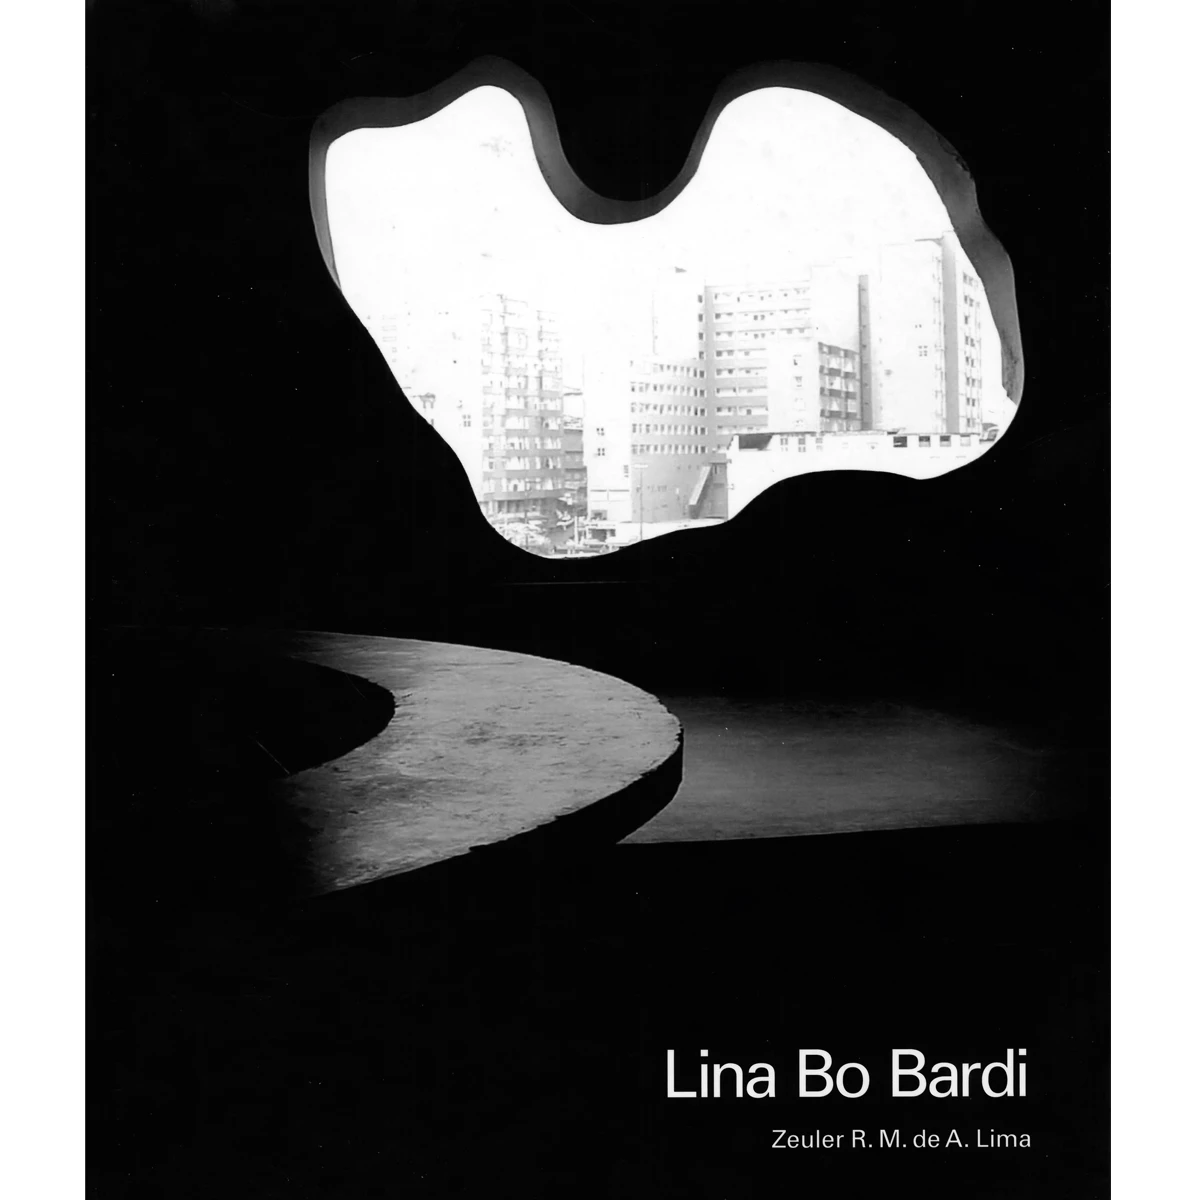 Lina Bo Bardi